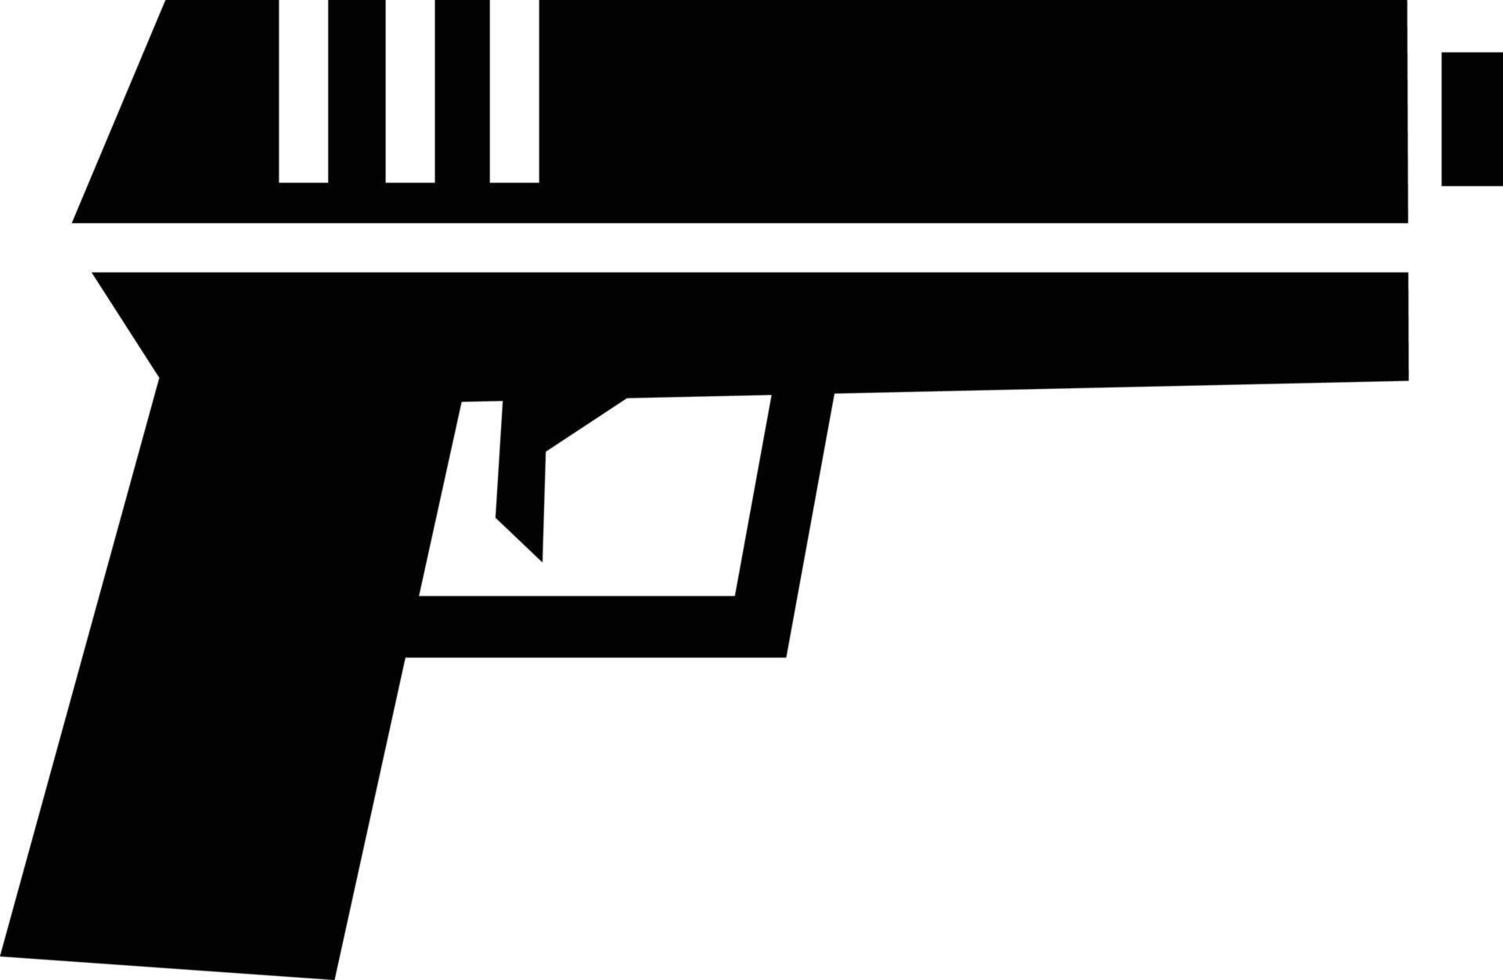 pistol pistol illustration vektor